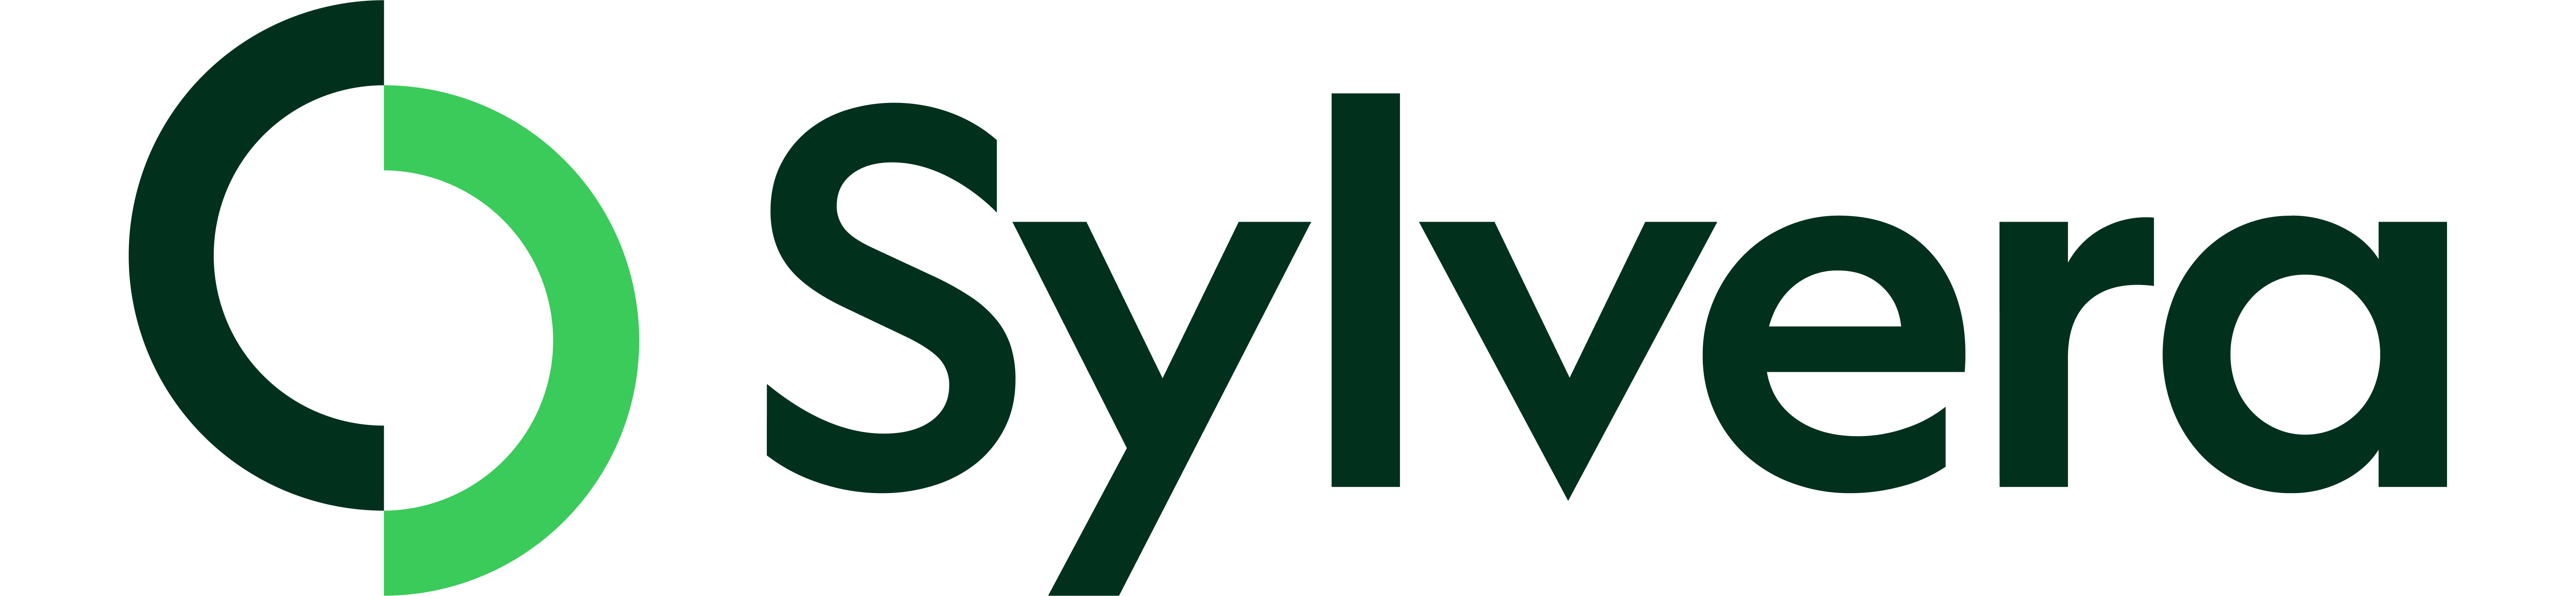 Sylvera logo color.png